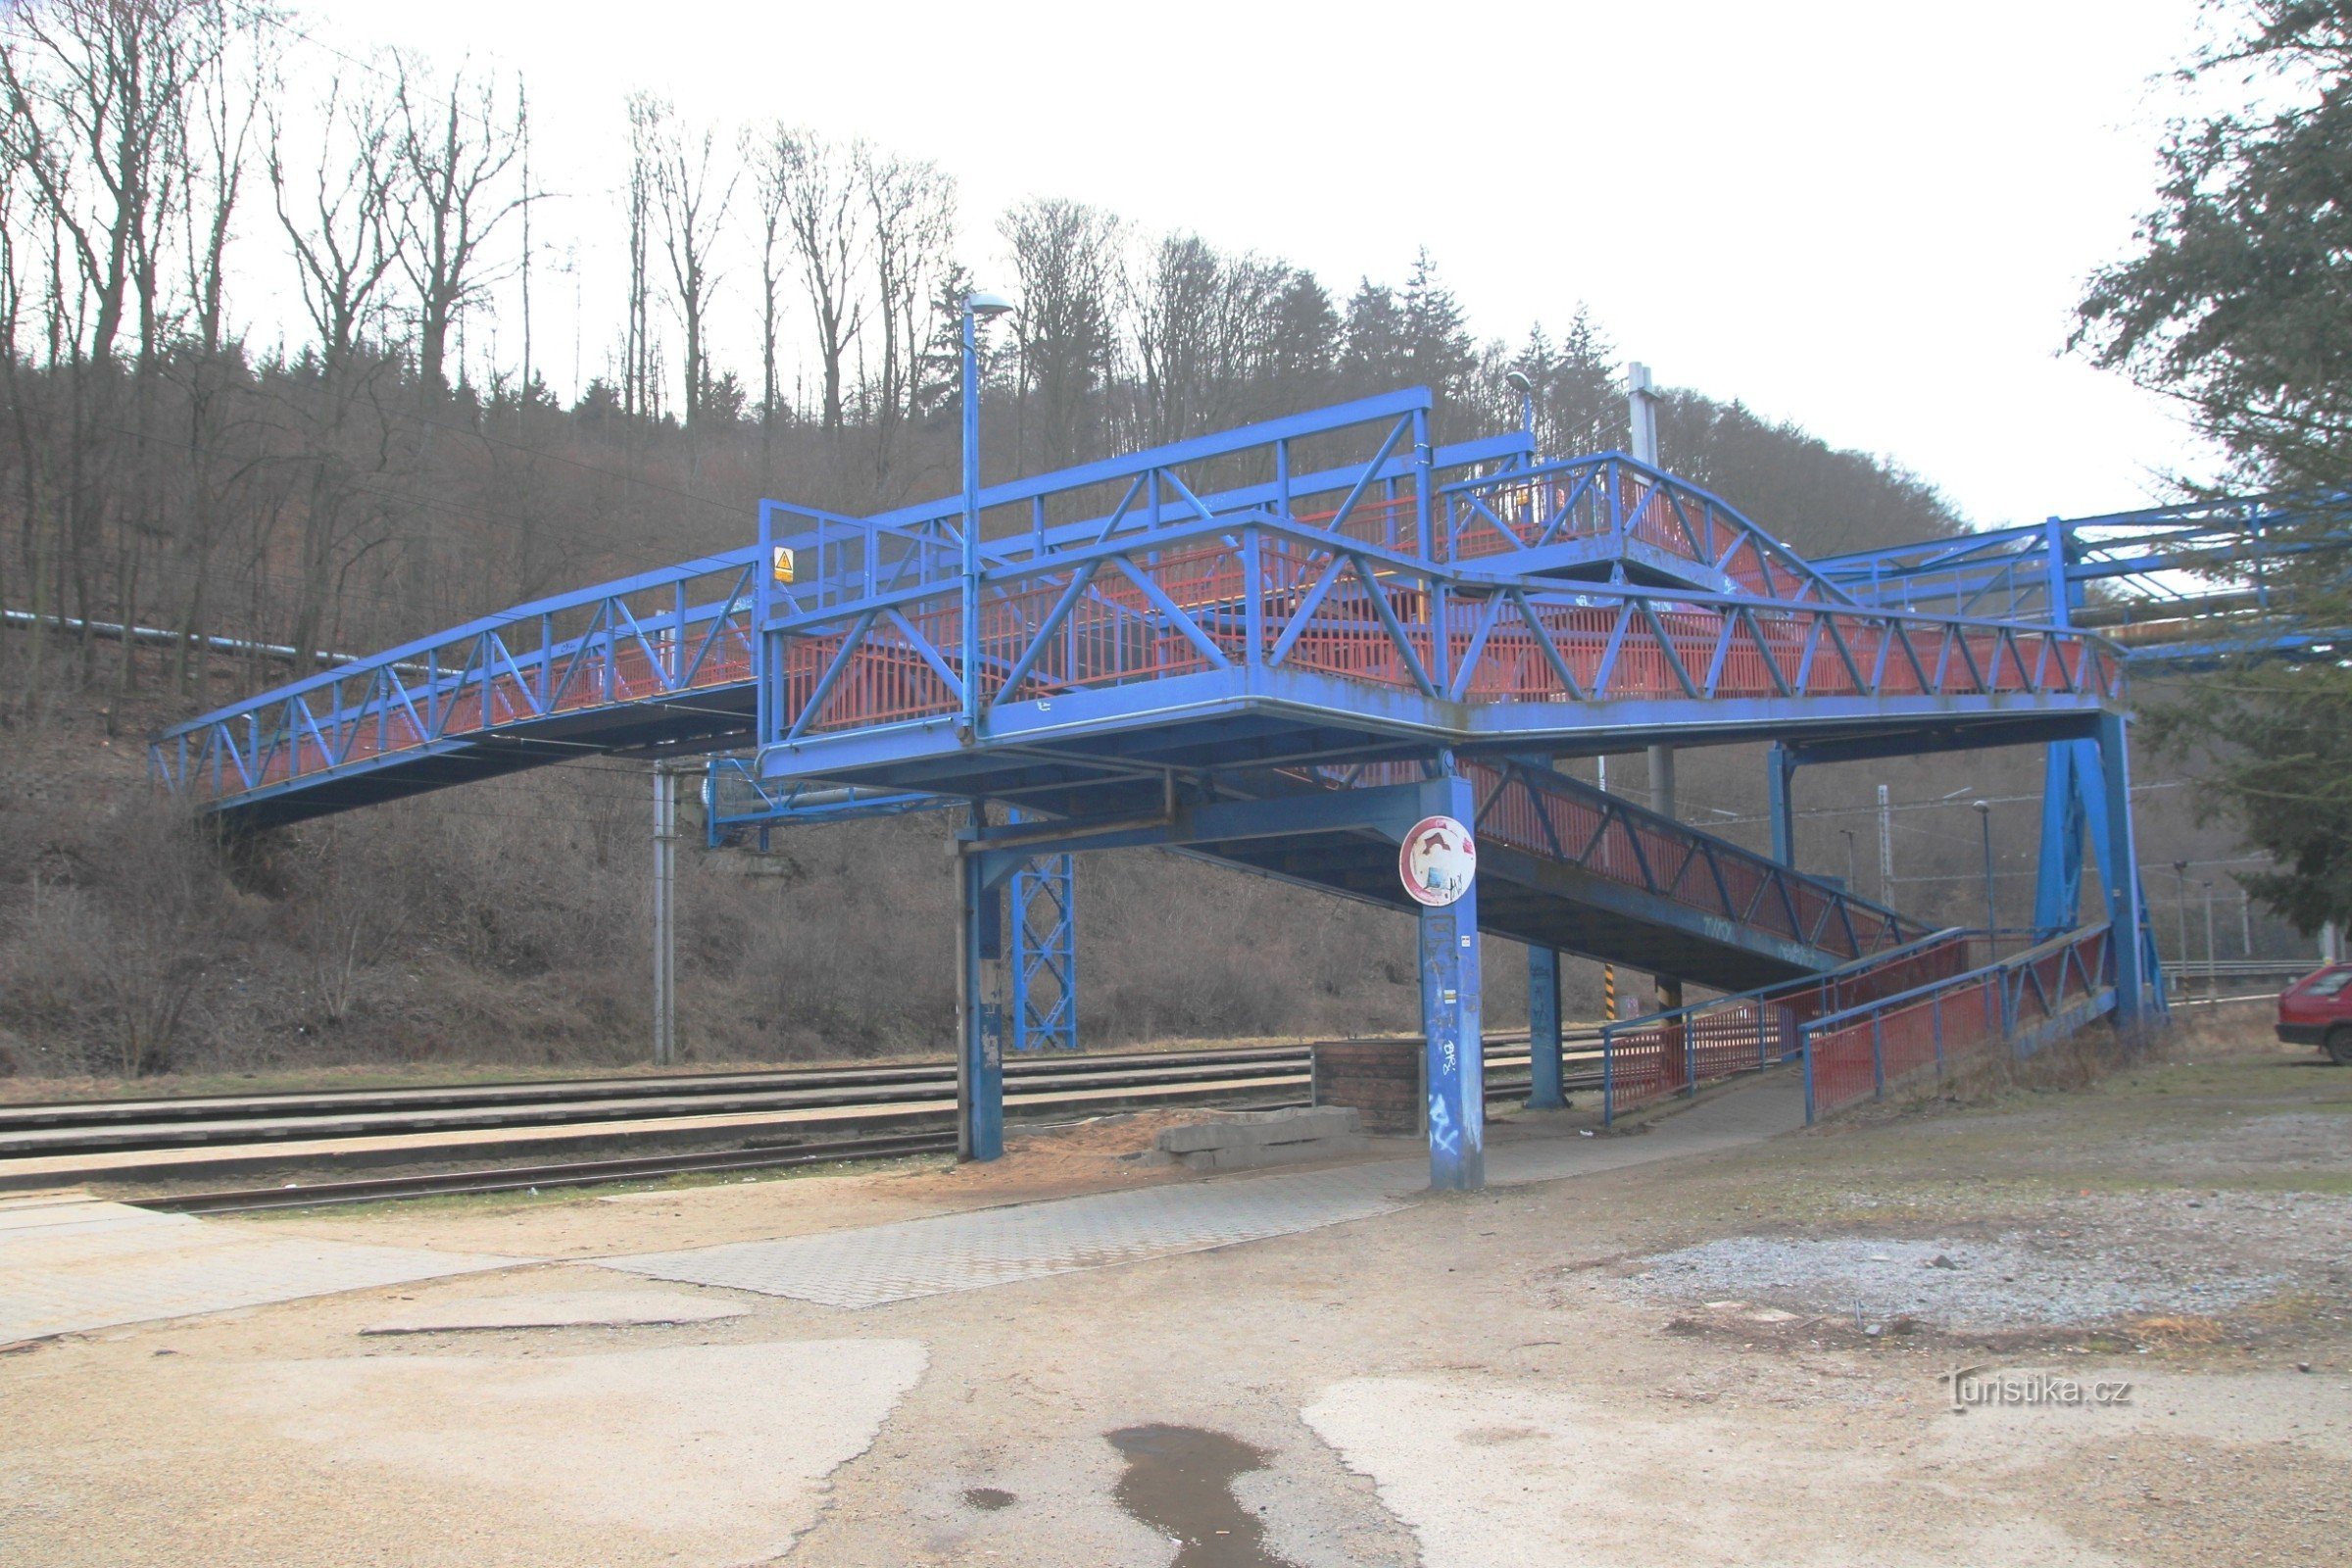 Uitzicht op de loopbrug vanaf de ingang van het station